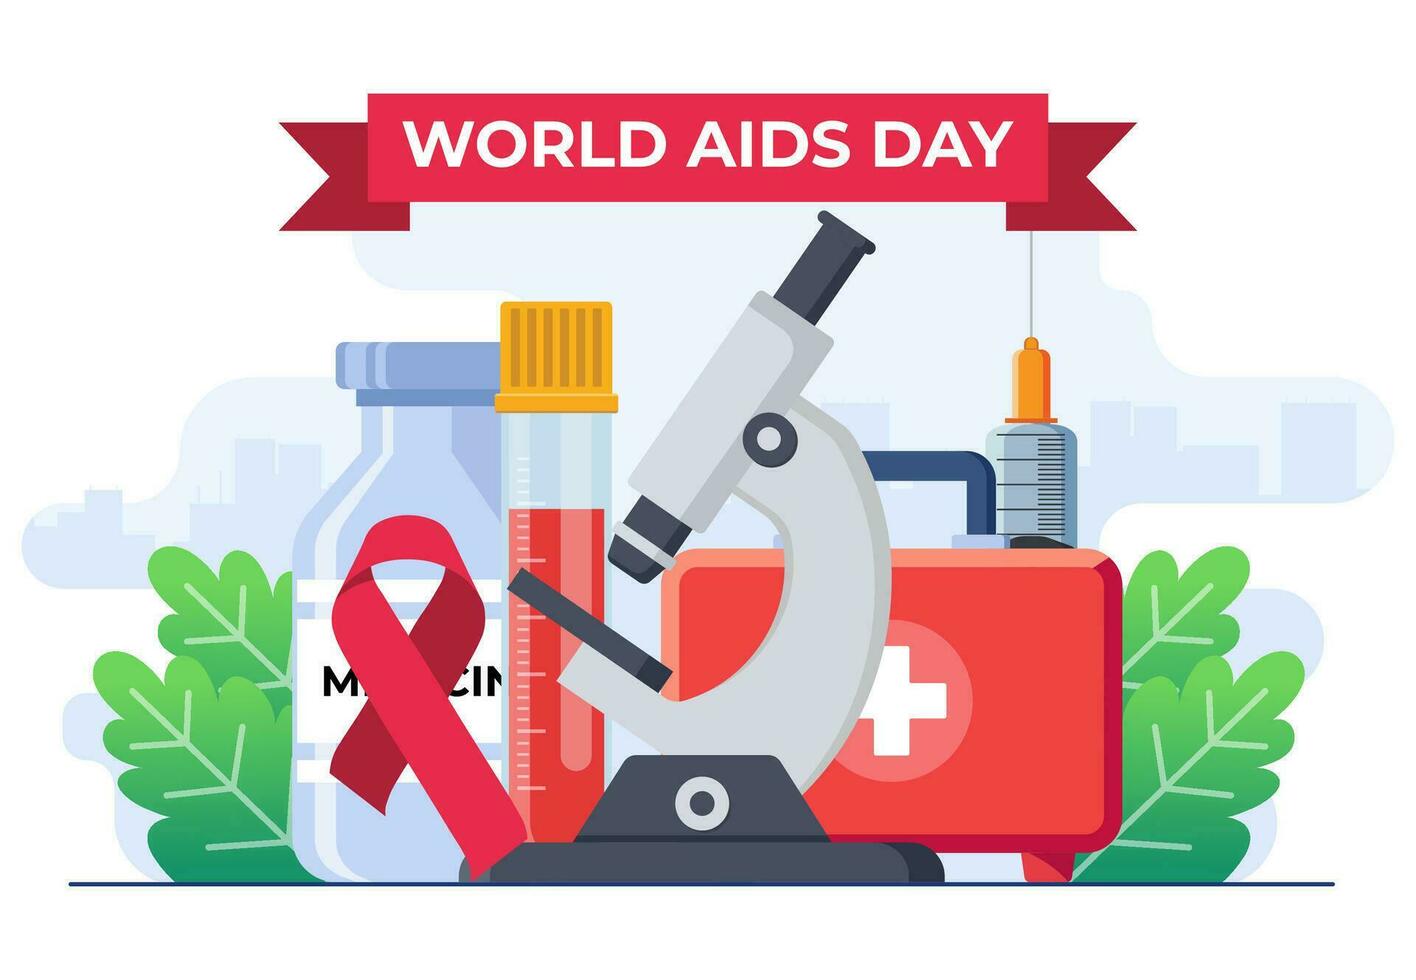 värld AIDS dag illustration begrepp platt vektor illustration vektor mall, medicinsk Utrustning med mikroskop, spruta, rör, röd band till höja medvetenhet av de AIDS epidemi